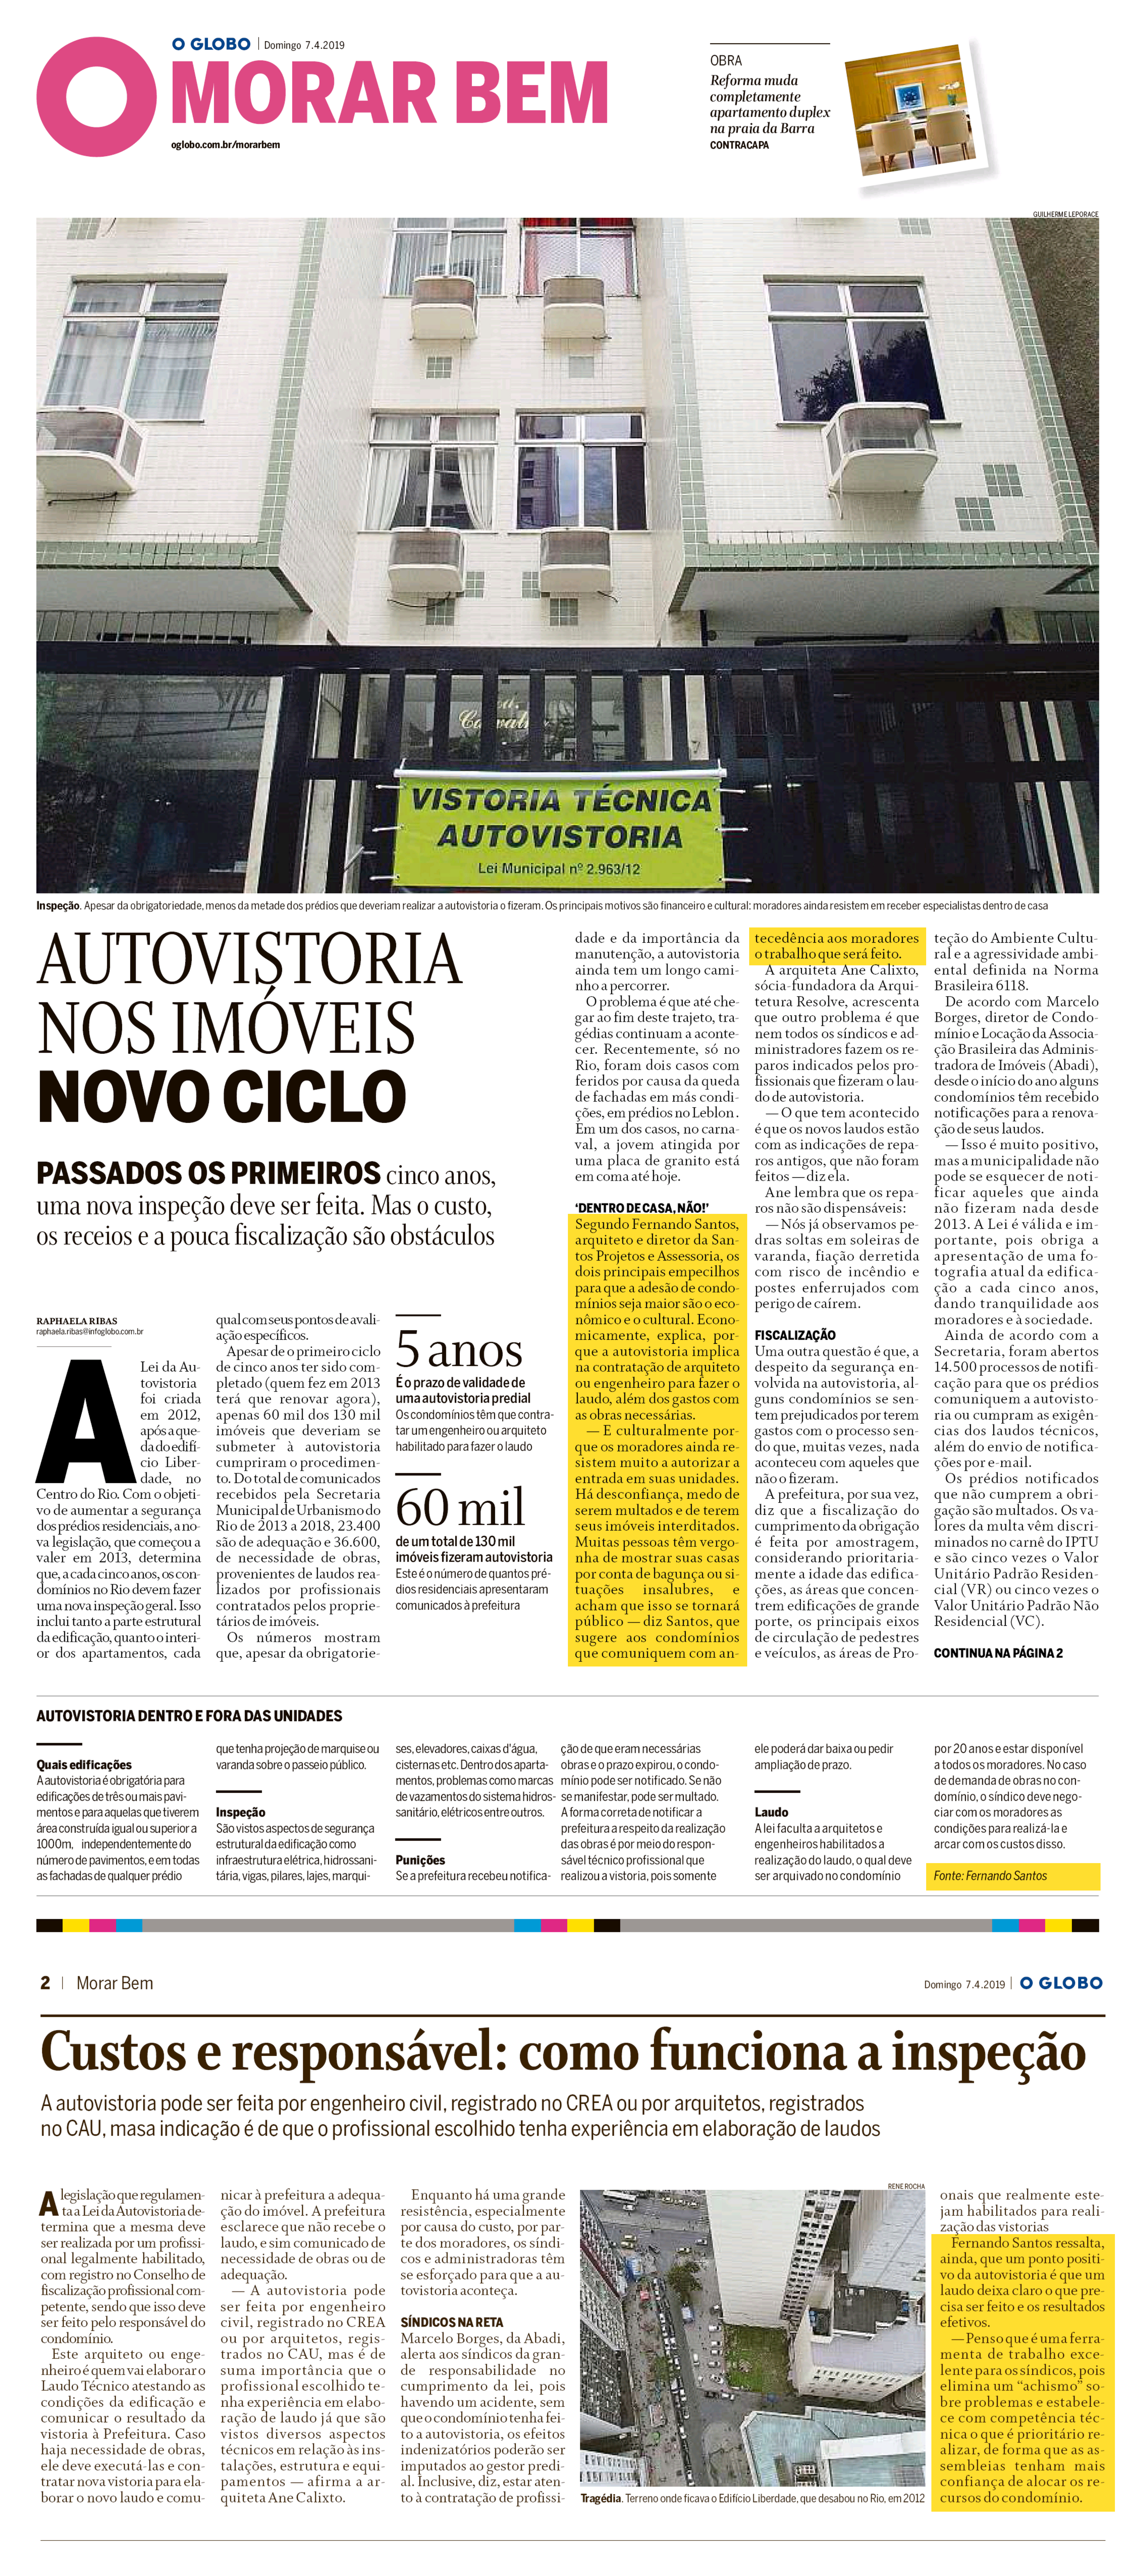 Jornal O Globo (Morar Bem) Autovistoria nos imóveis – novo ciclo